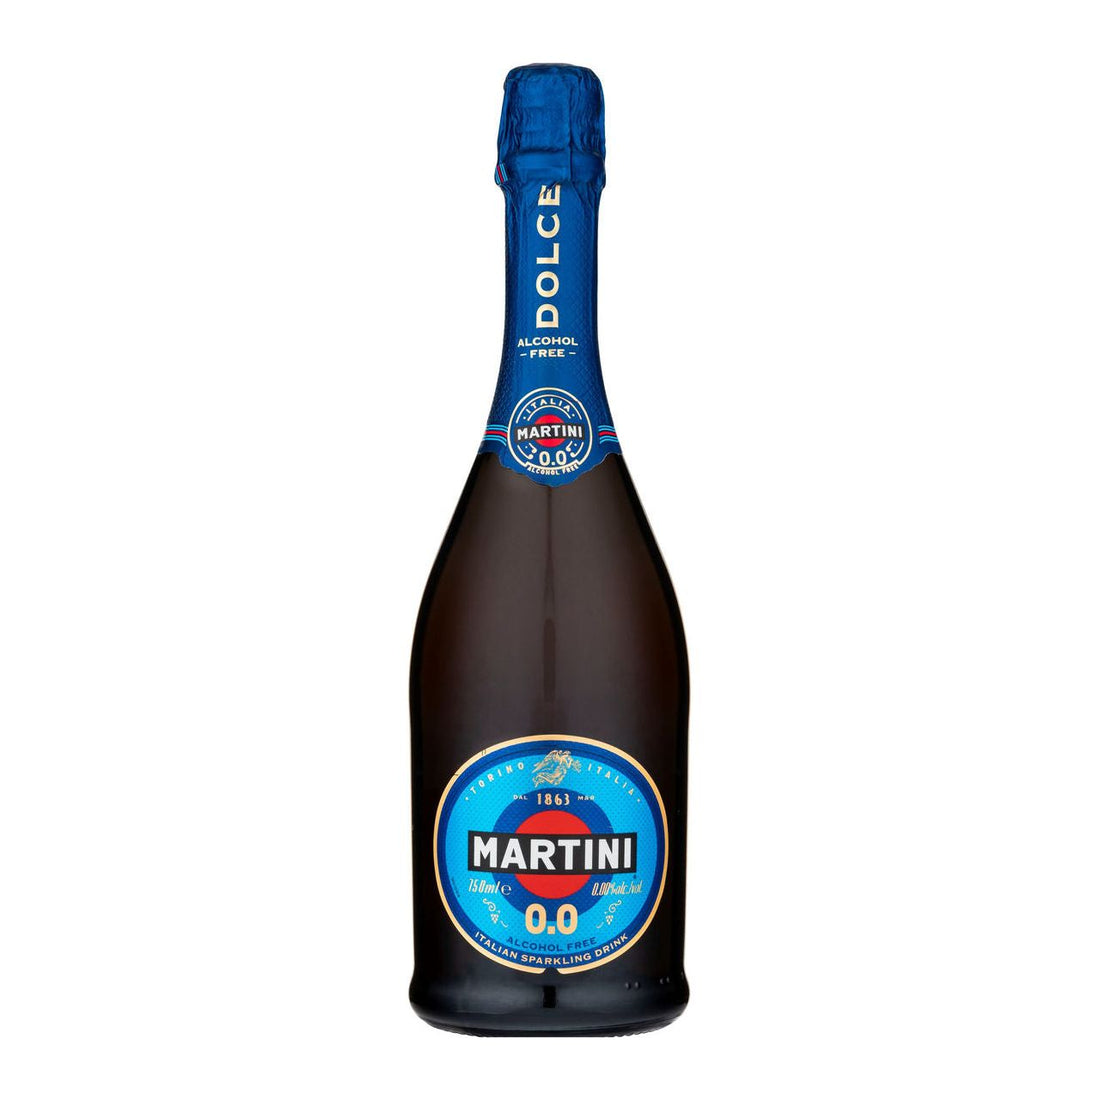 Martini Dolce 0.0 Non-Alcoholic Bubbles